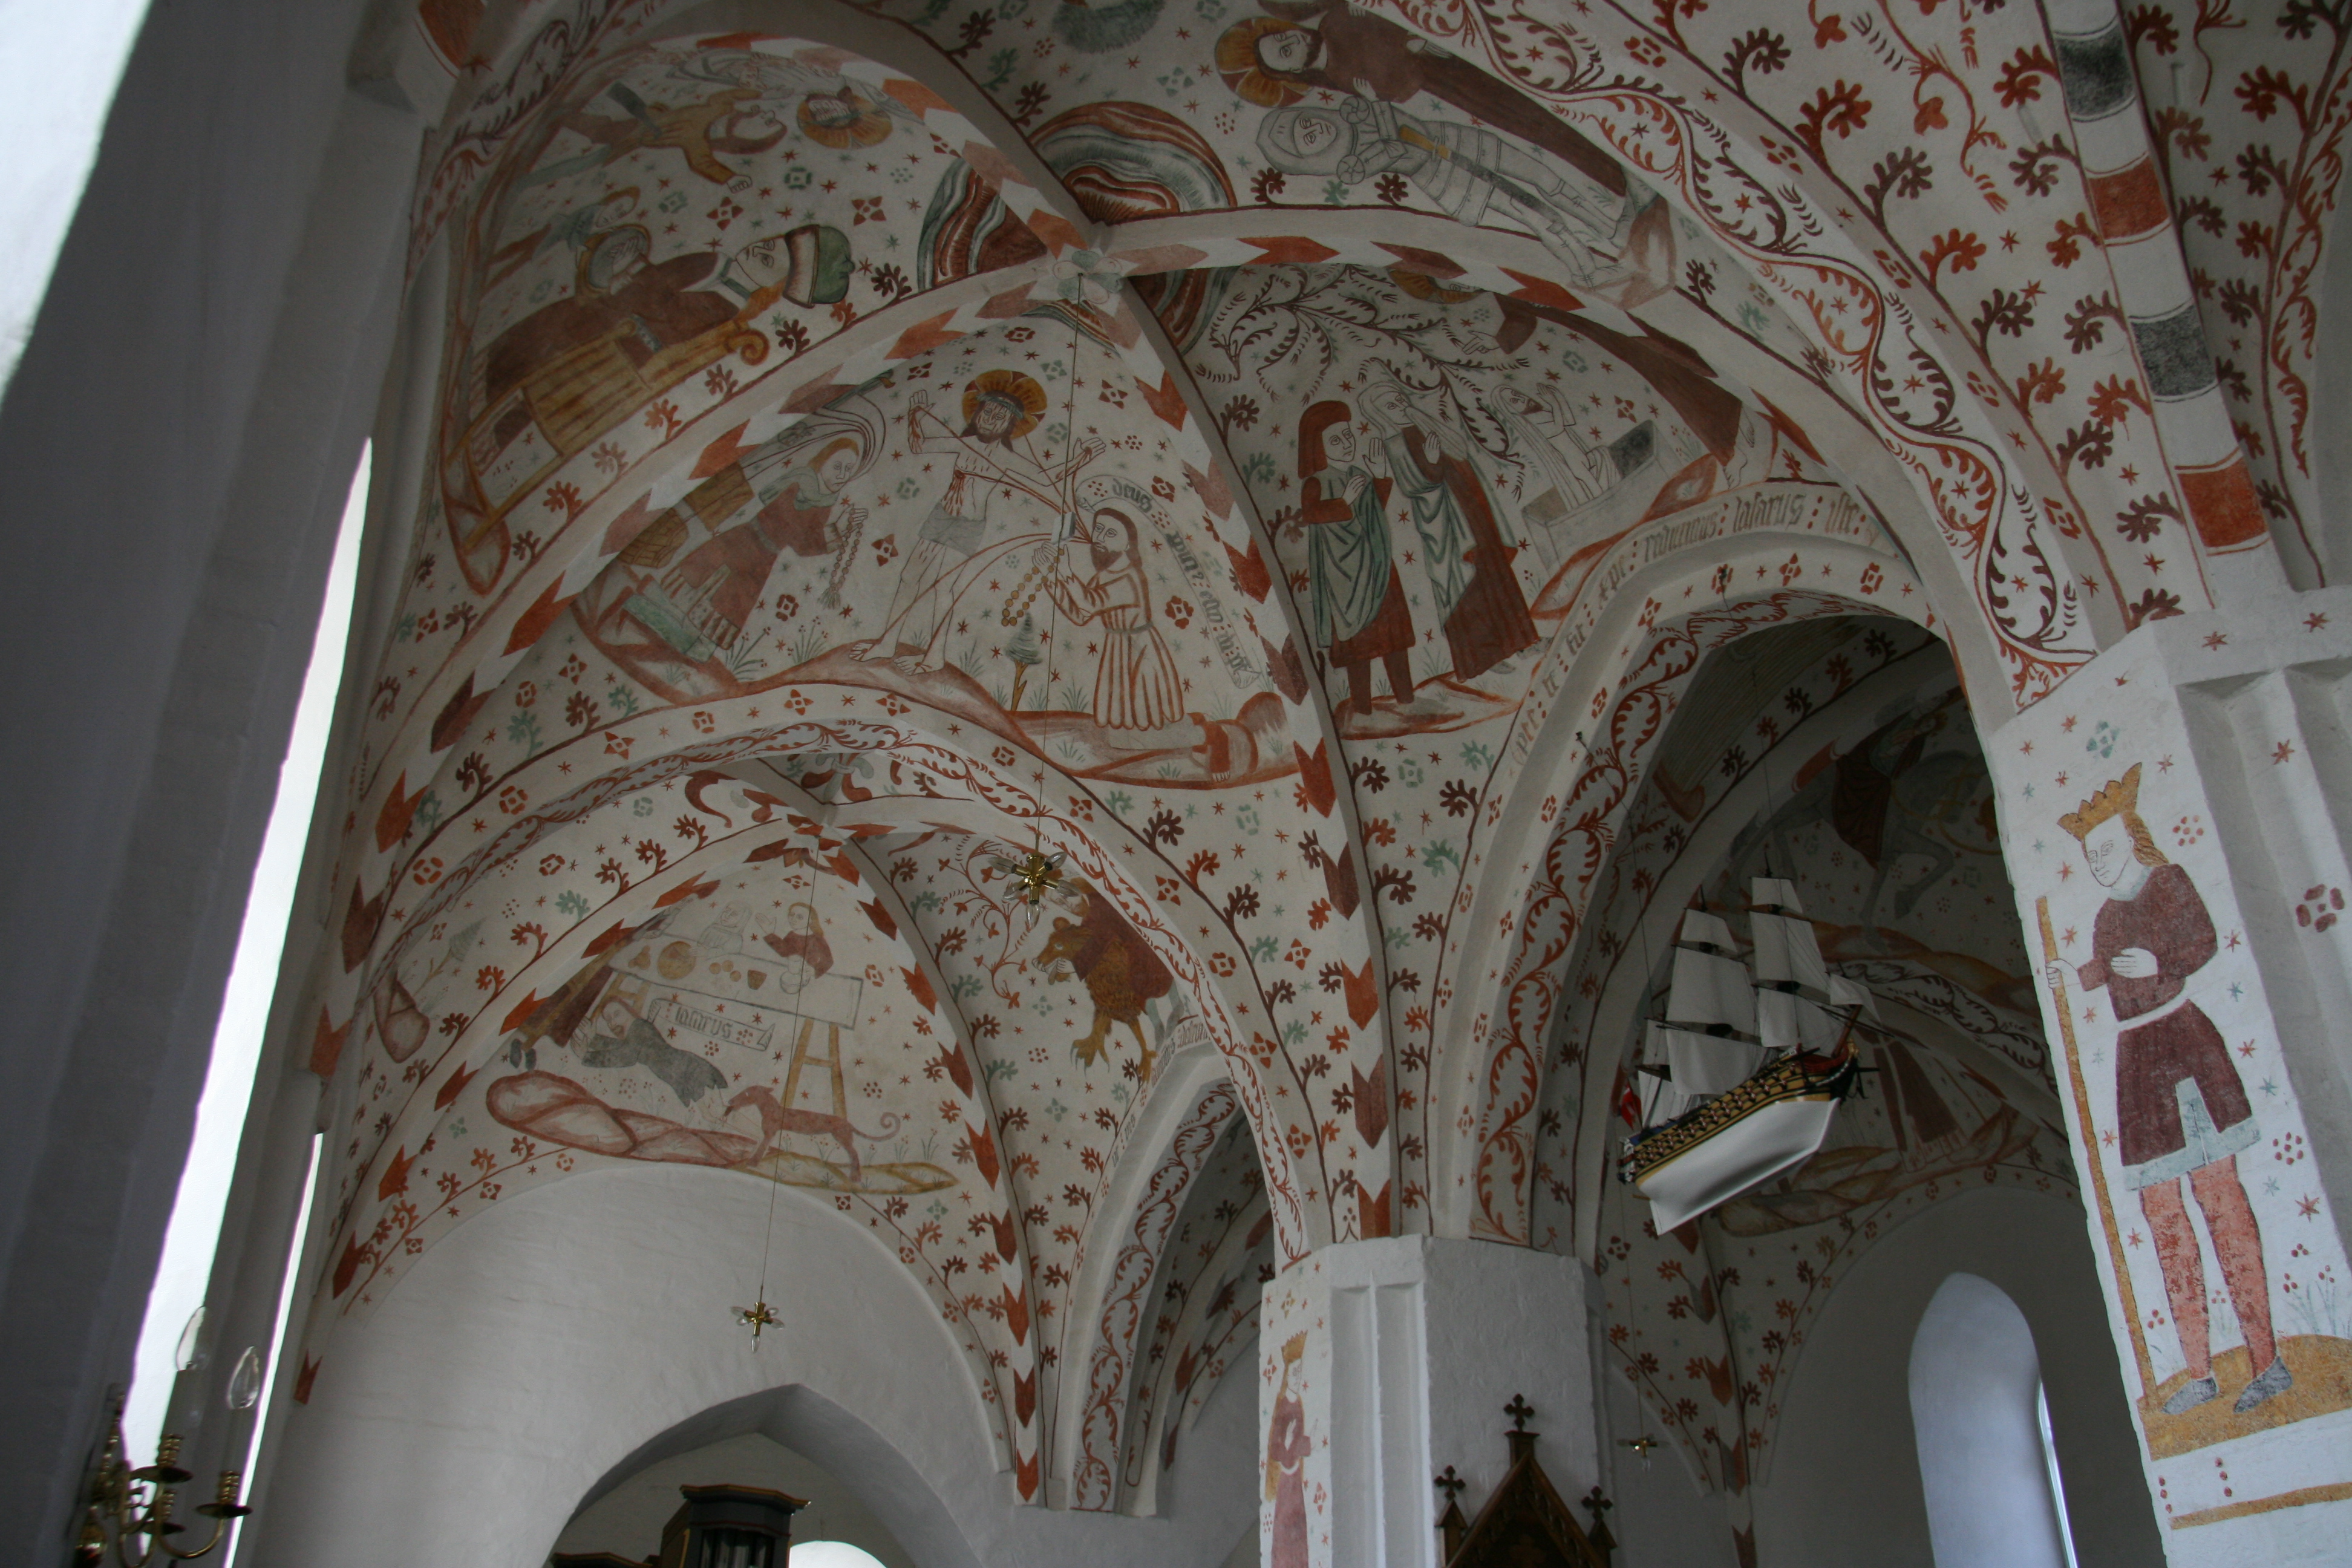 Frescoes in Fanefjord church on Møn (Denmark)